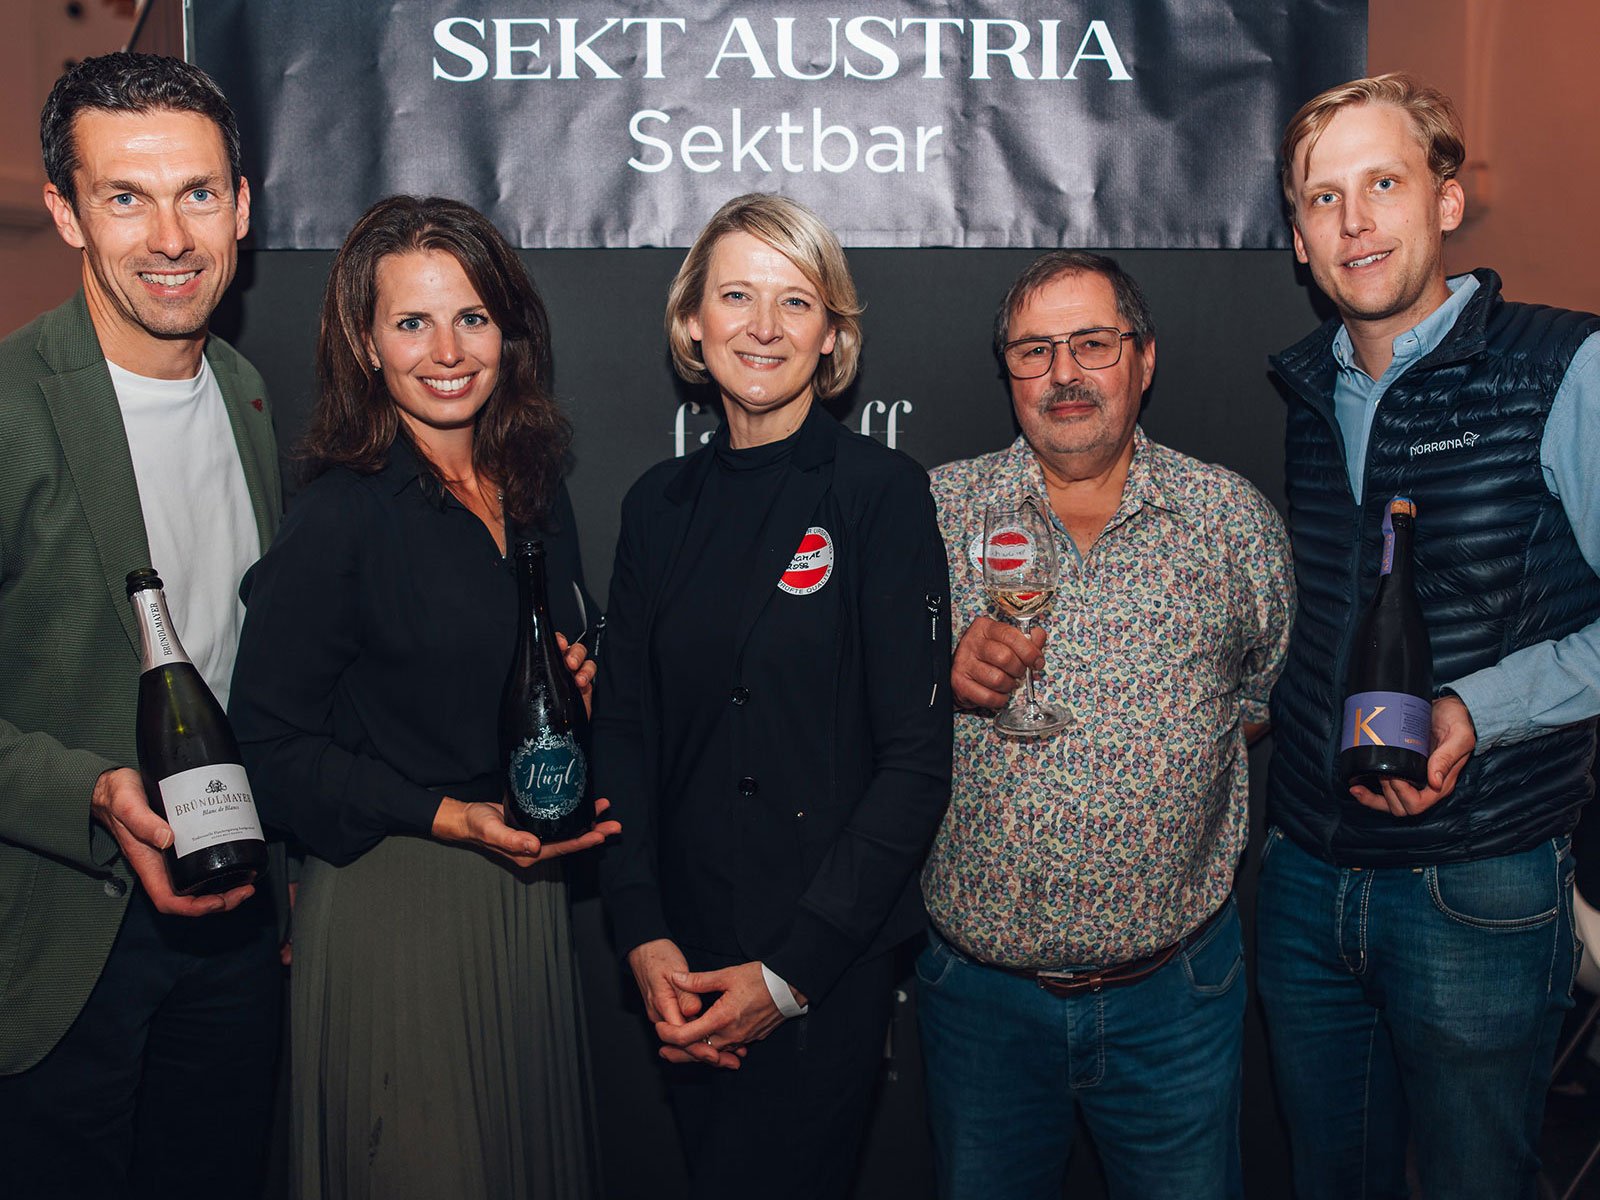 Dagmar Gross (Mitte) mit Mitgliedern von Sekt Austria.